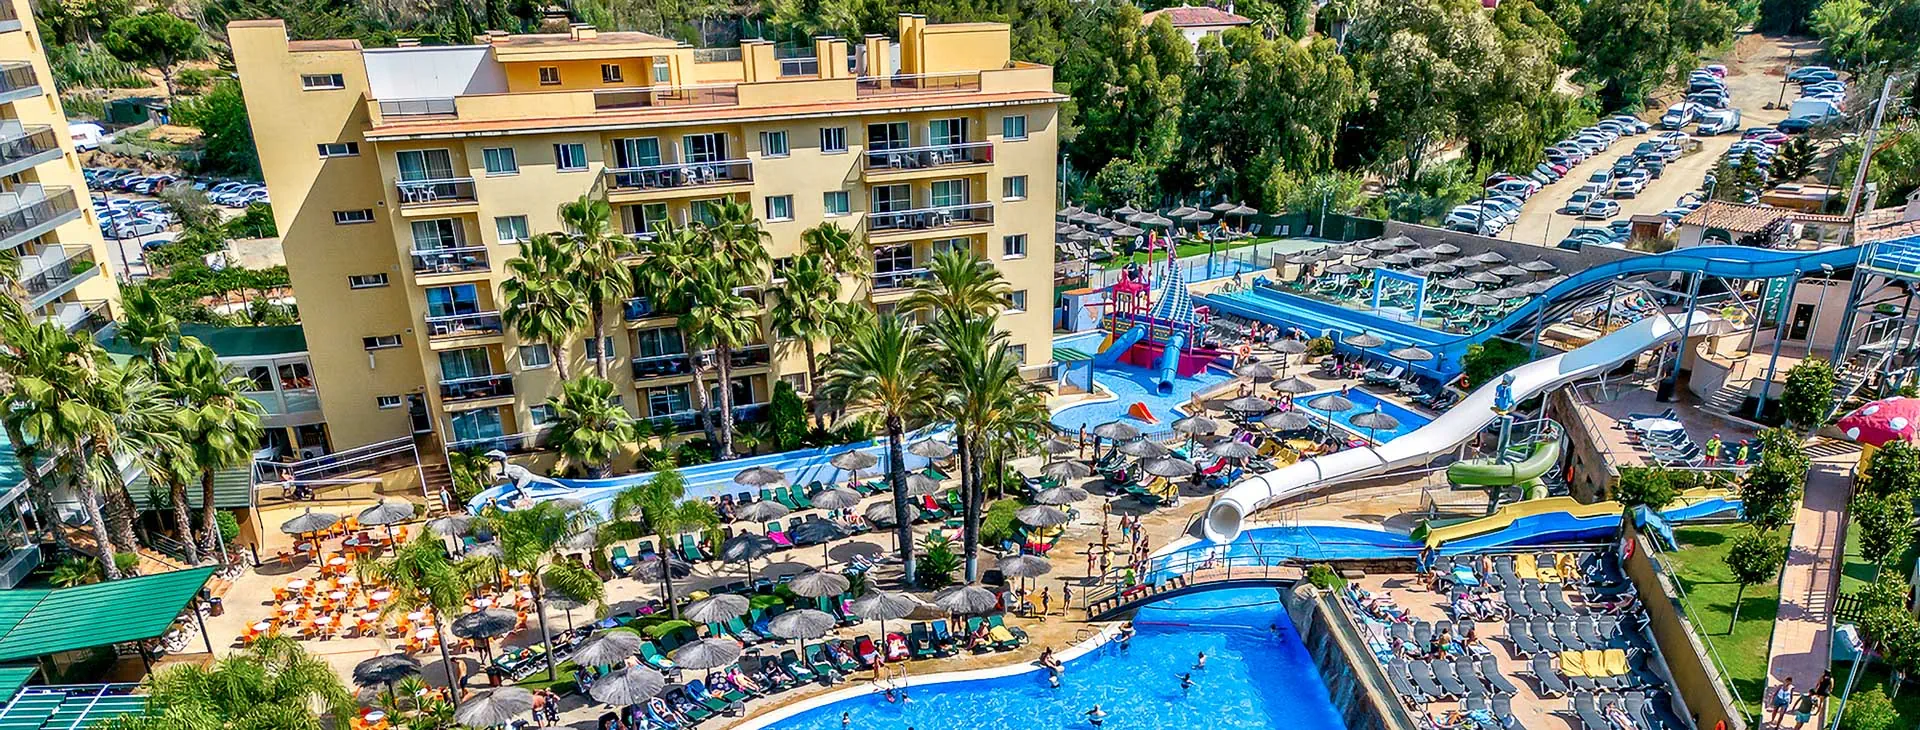 Hiszpania Costa Brava Lloret de Mar Rosamar Garden Resort